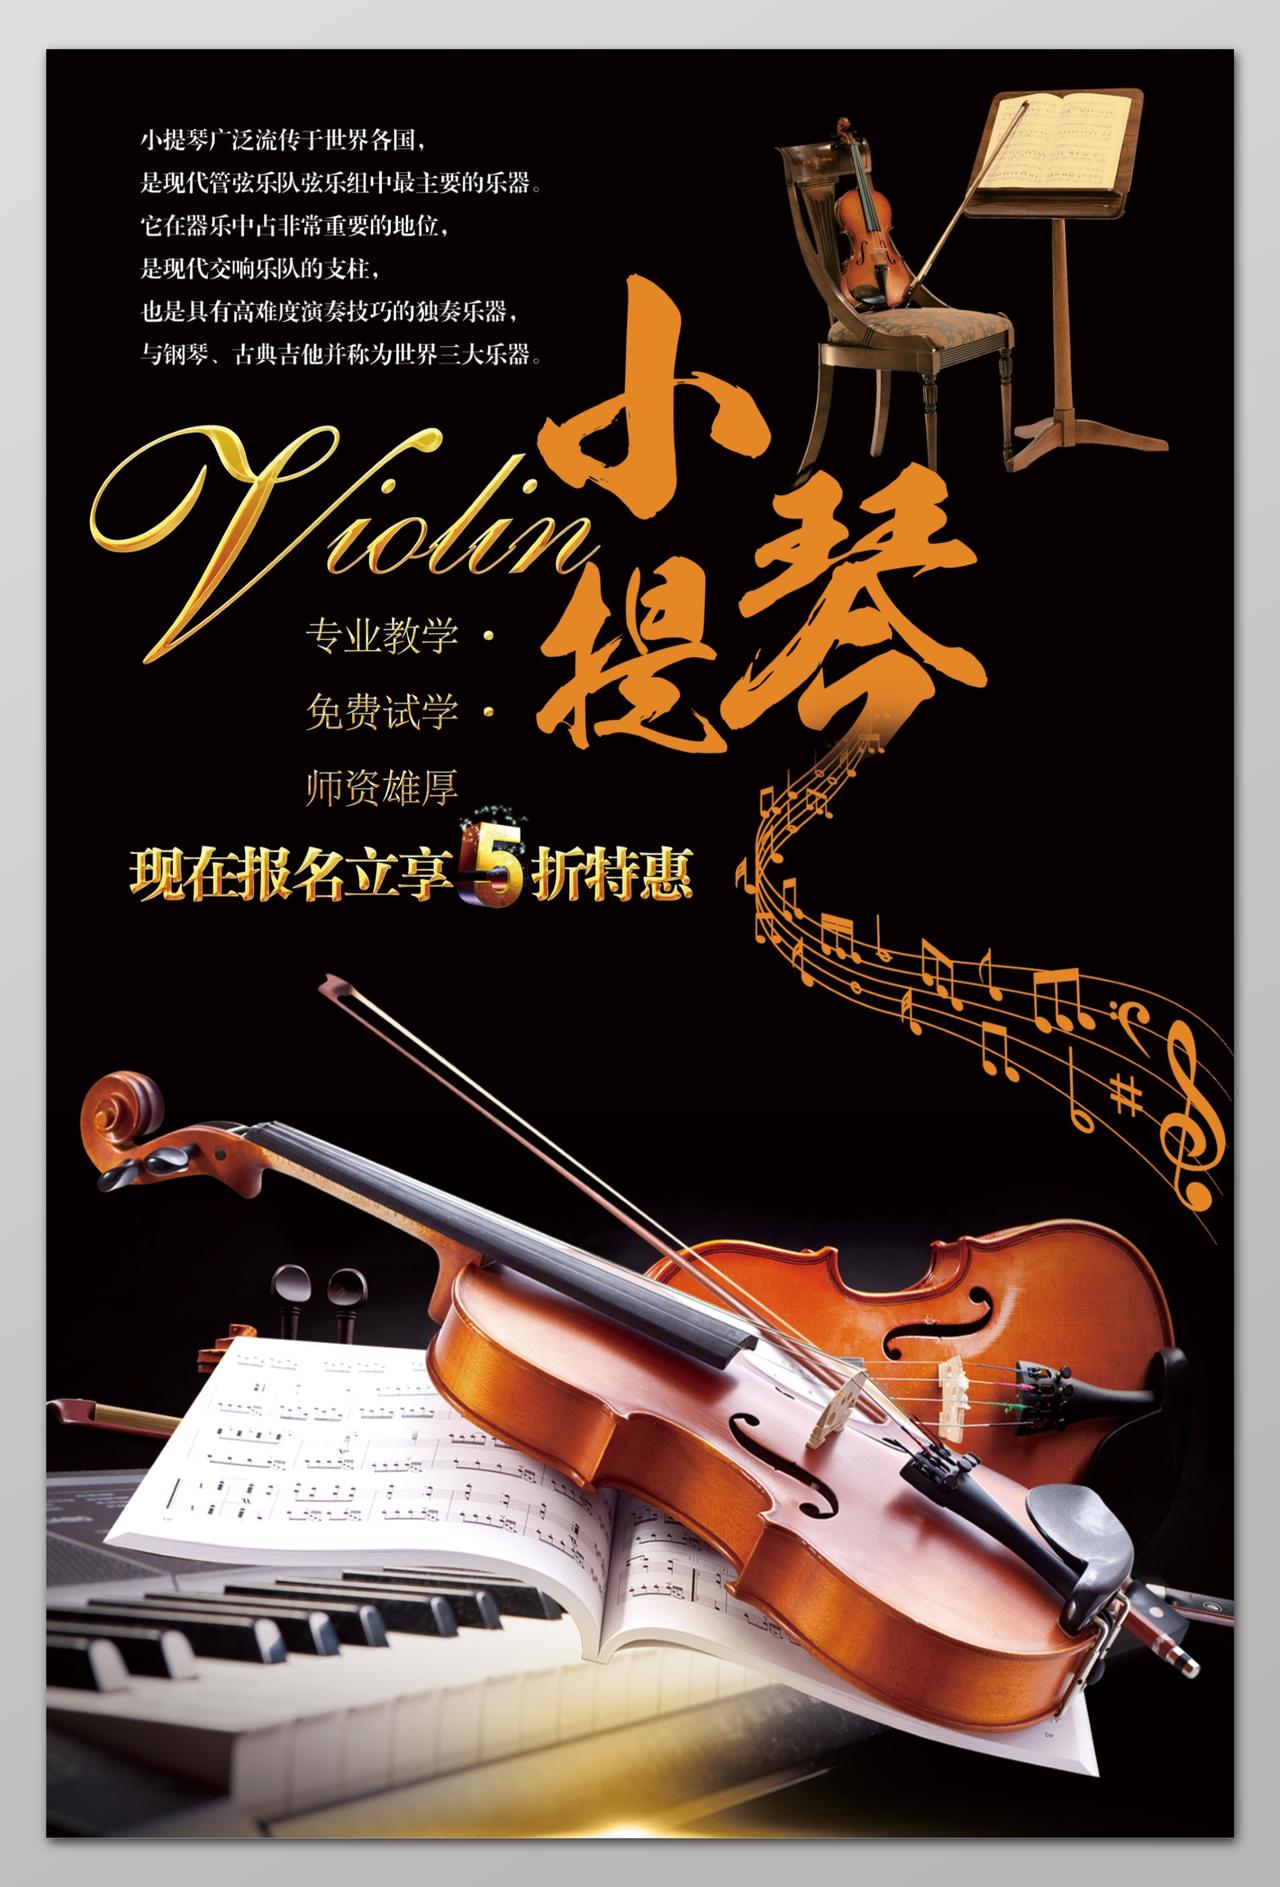 现在报名打折特惠小提琴培训招生音乐艺术声乐海报设计